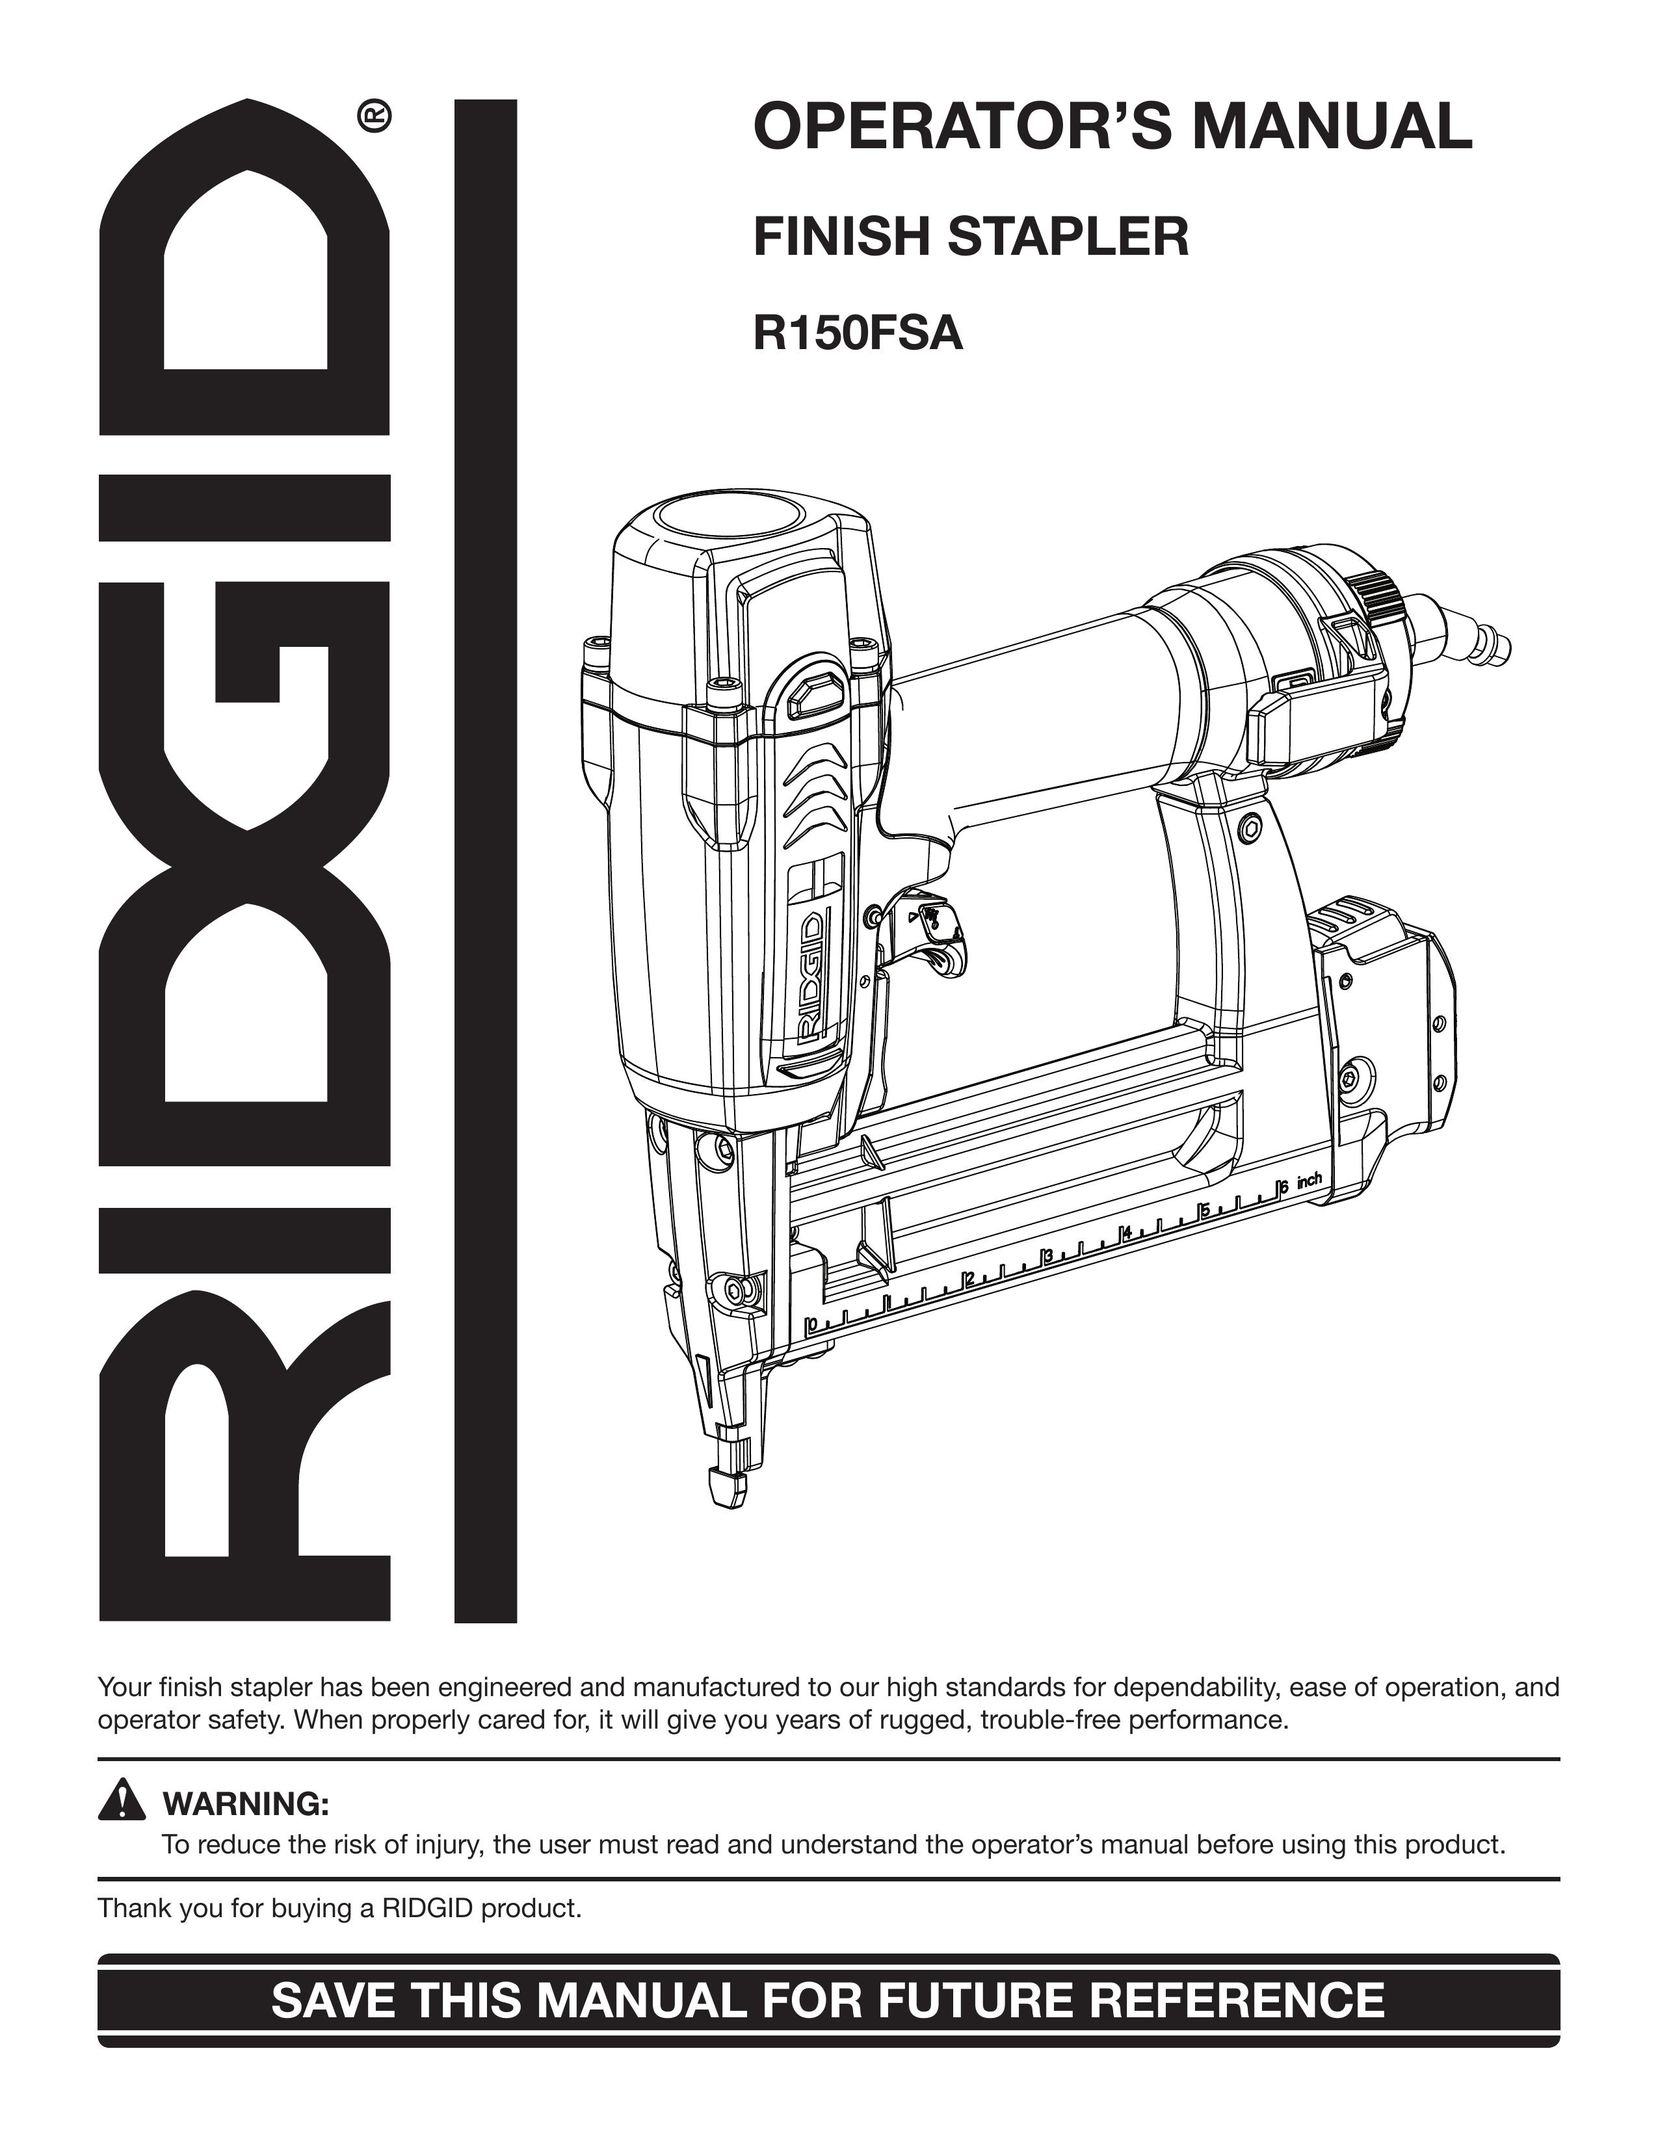 RIDGID R150FSA Plumbing Product User Manual